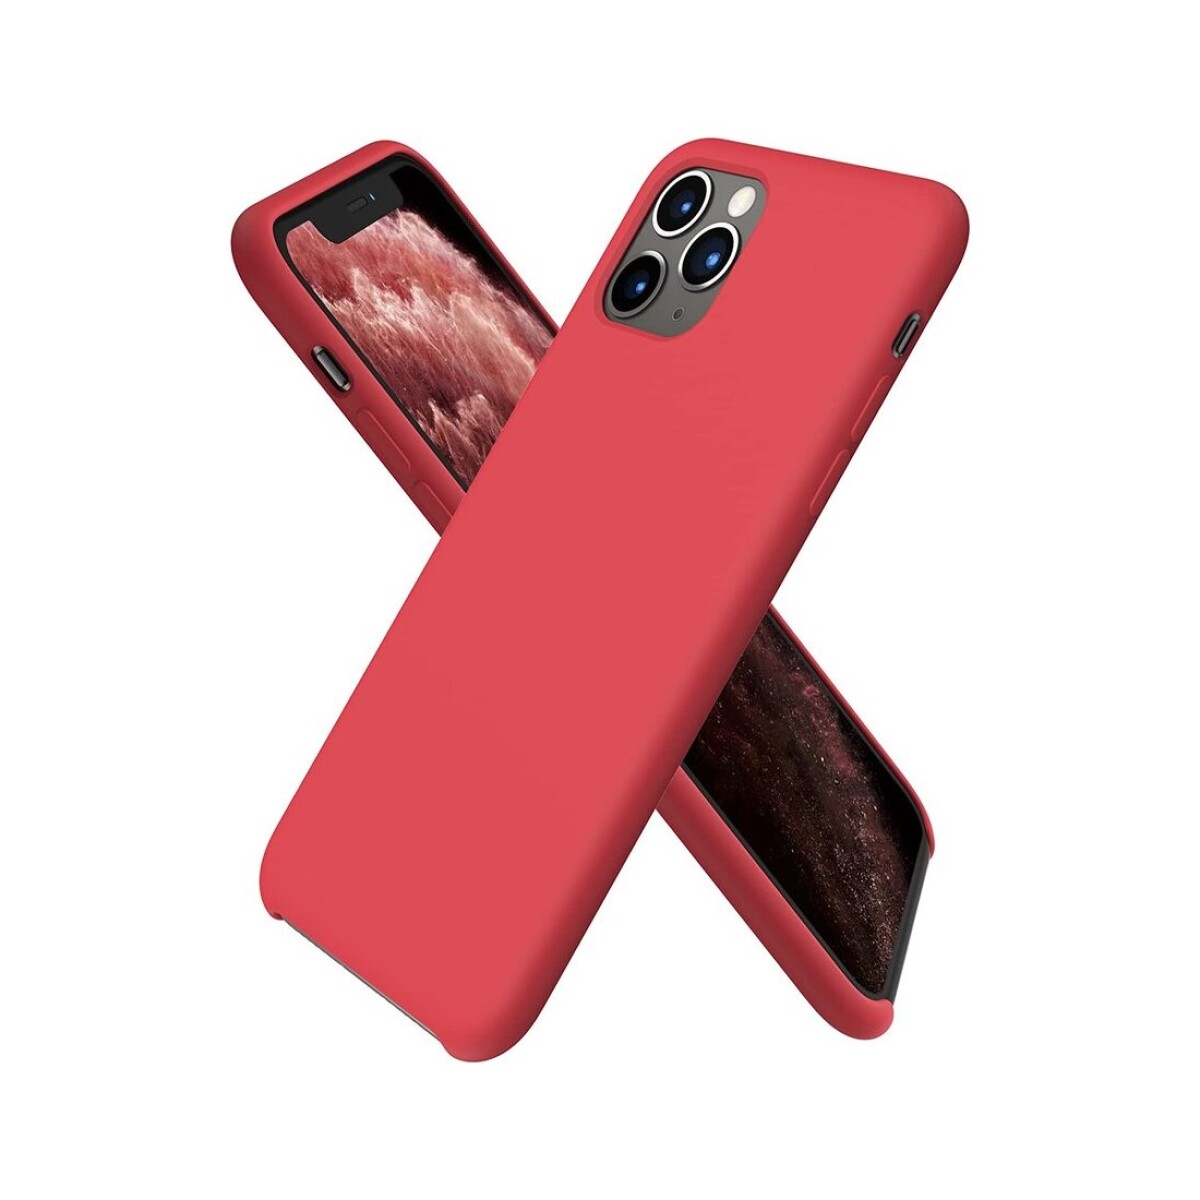 Protector case de silicona para iphone 11 pro - Rojo 